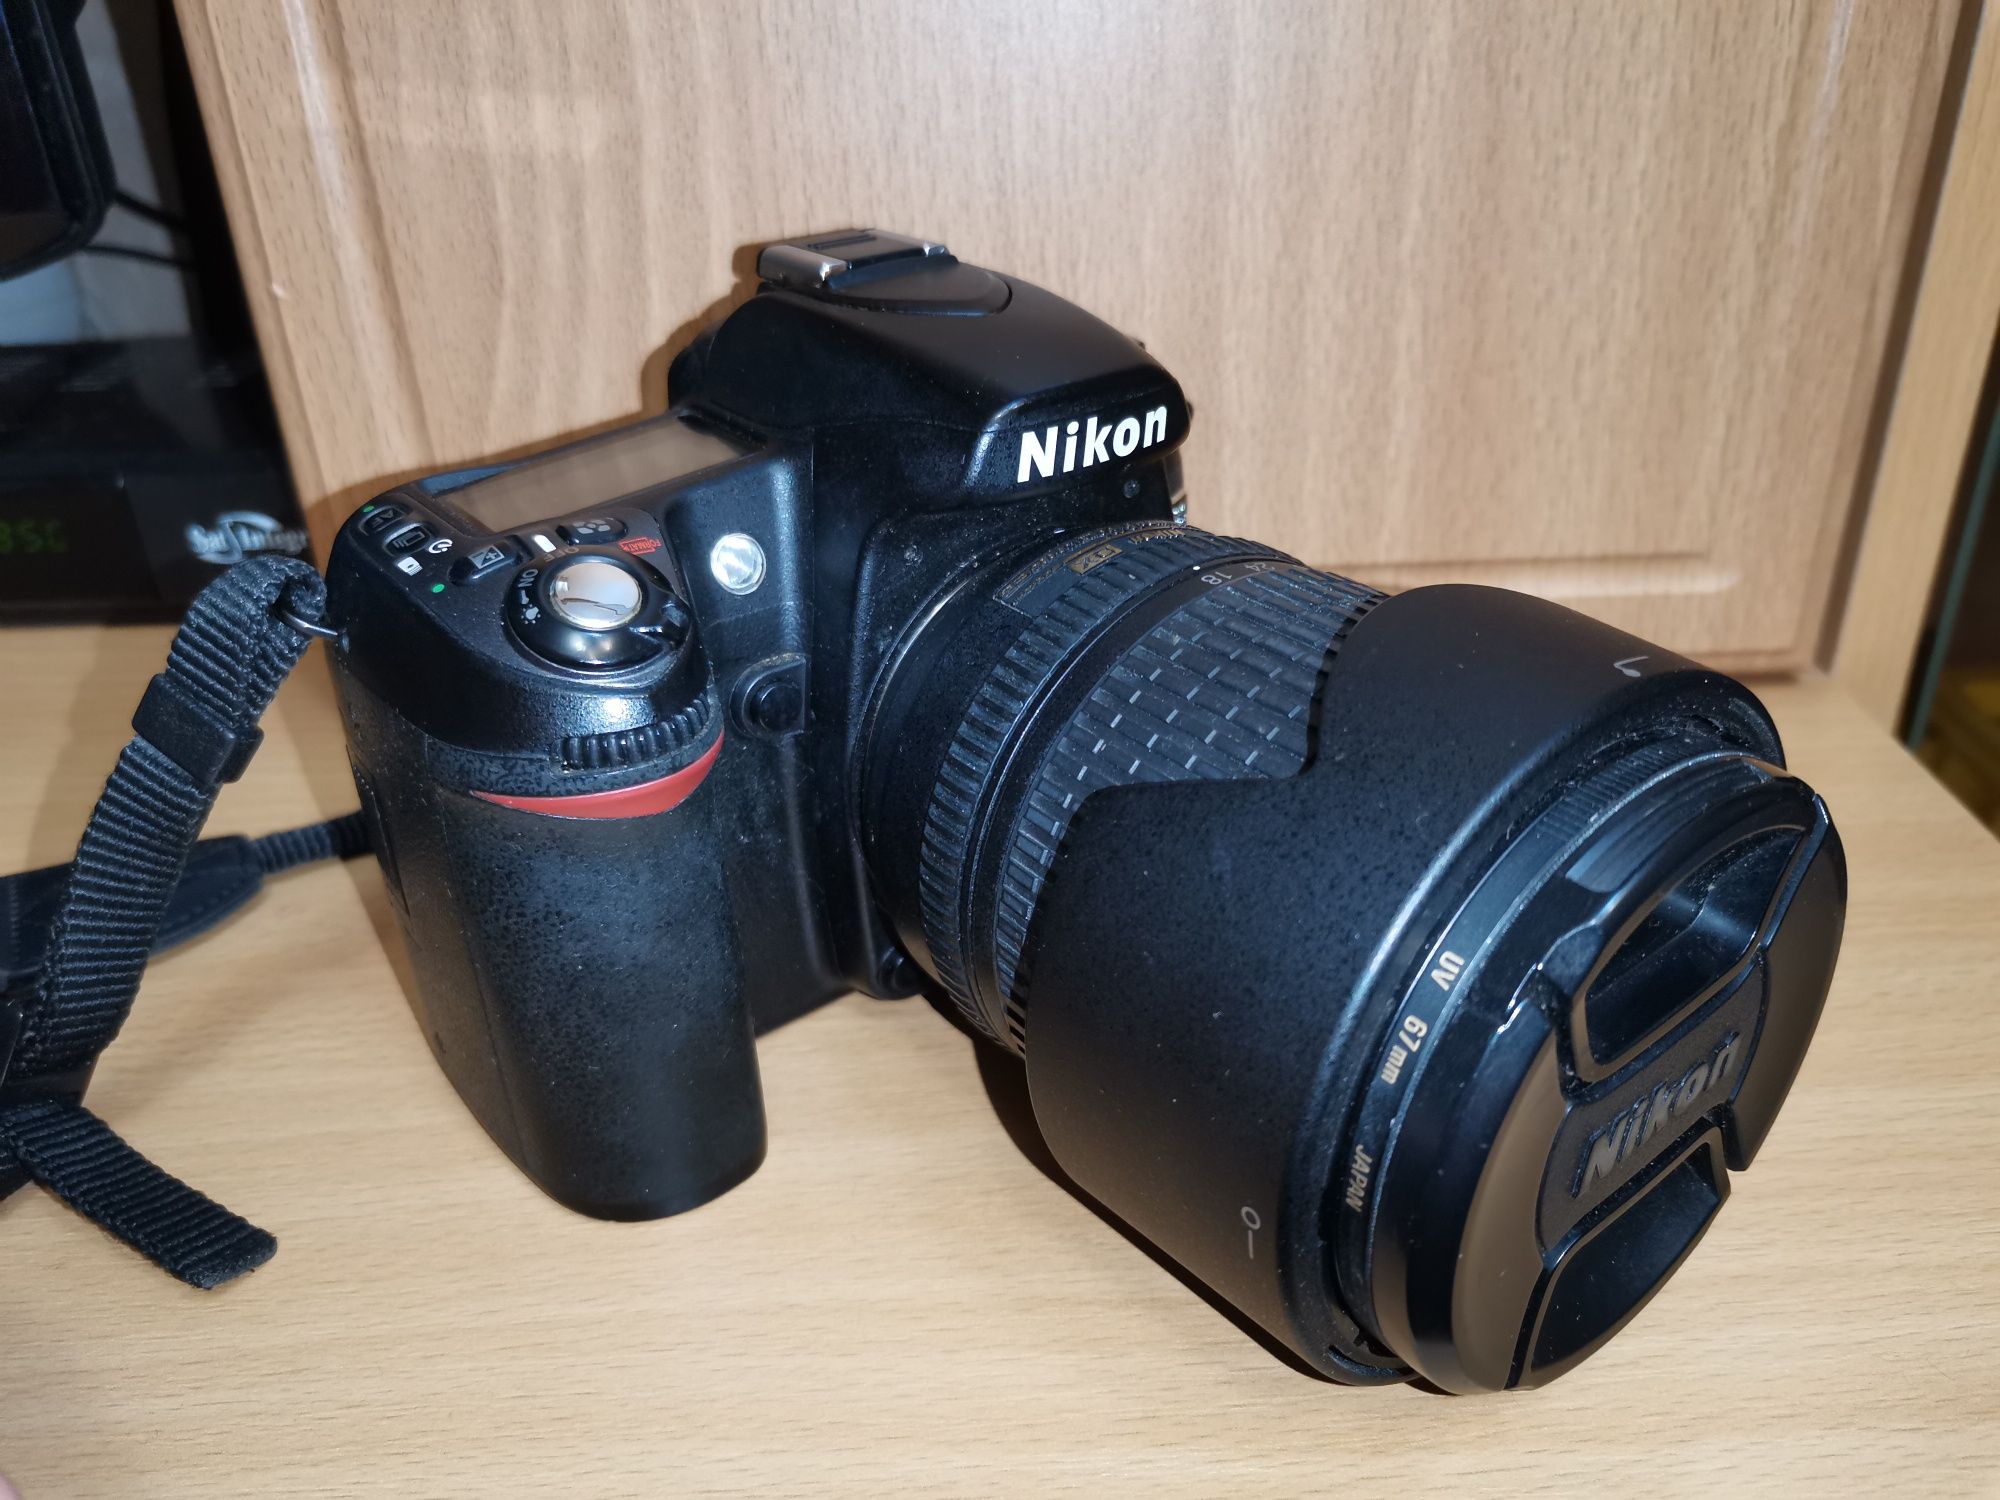 Nikon D80 + AF-S Nikkor 18-135mm